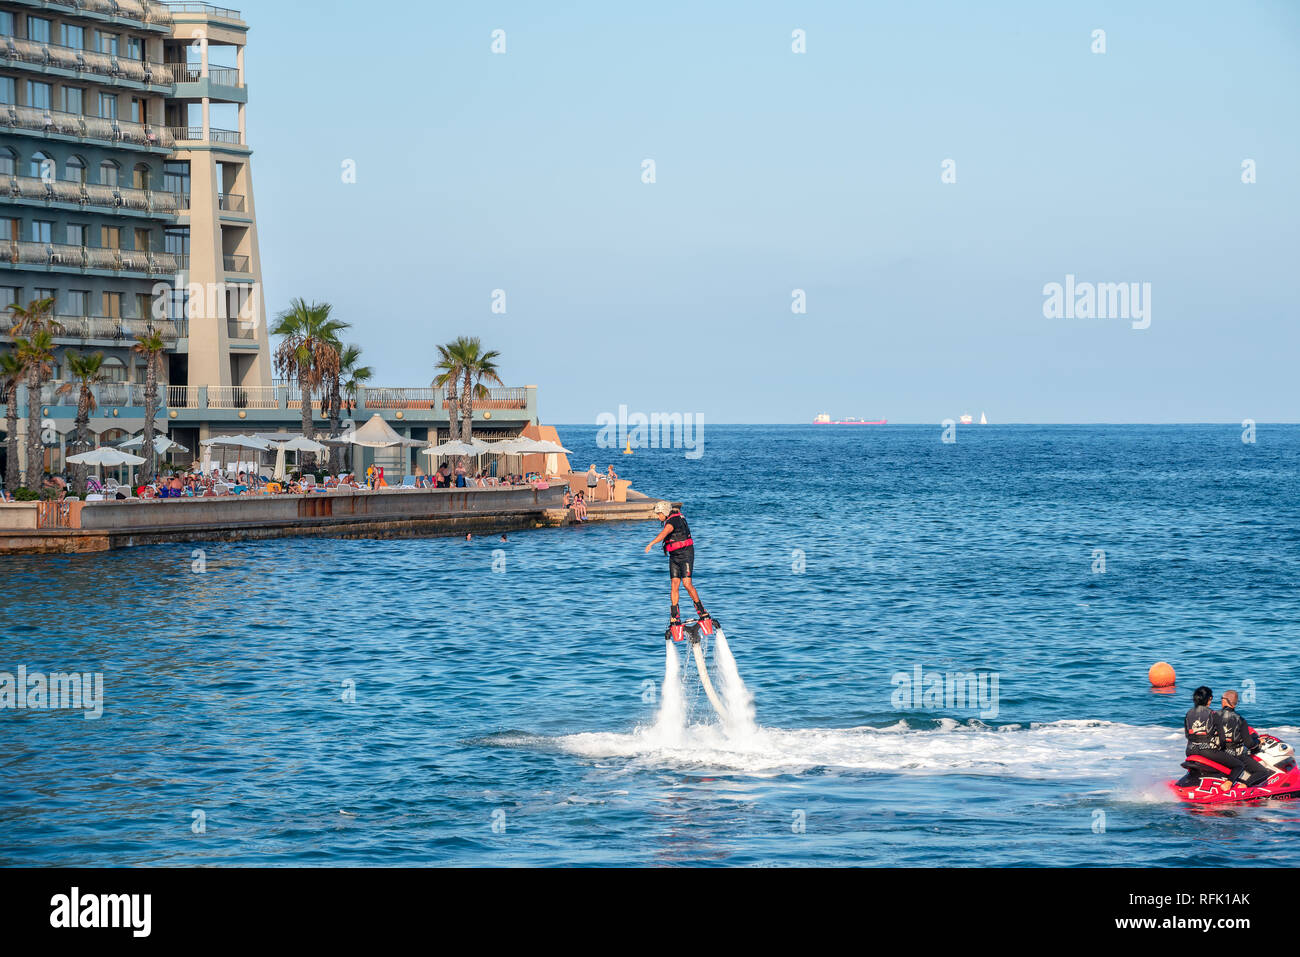 Nuevo tipo popular de extrema deporte acuático llamado flyboard en St. Julians bay. Malta Foto de stock